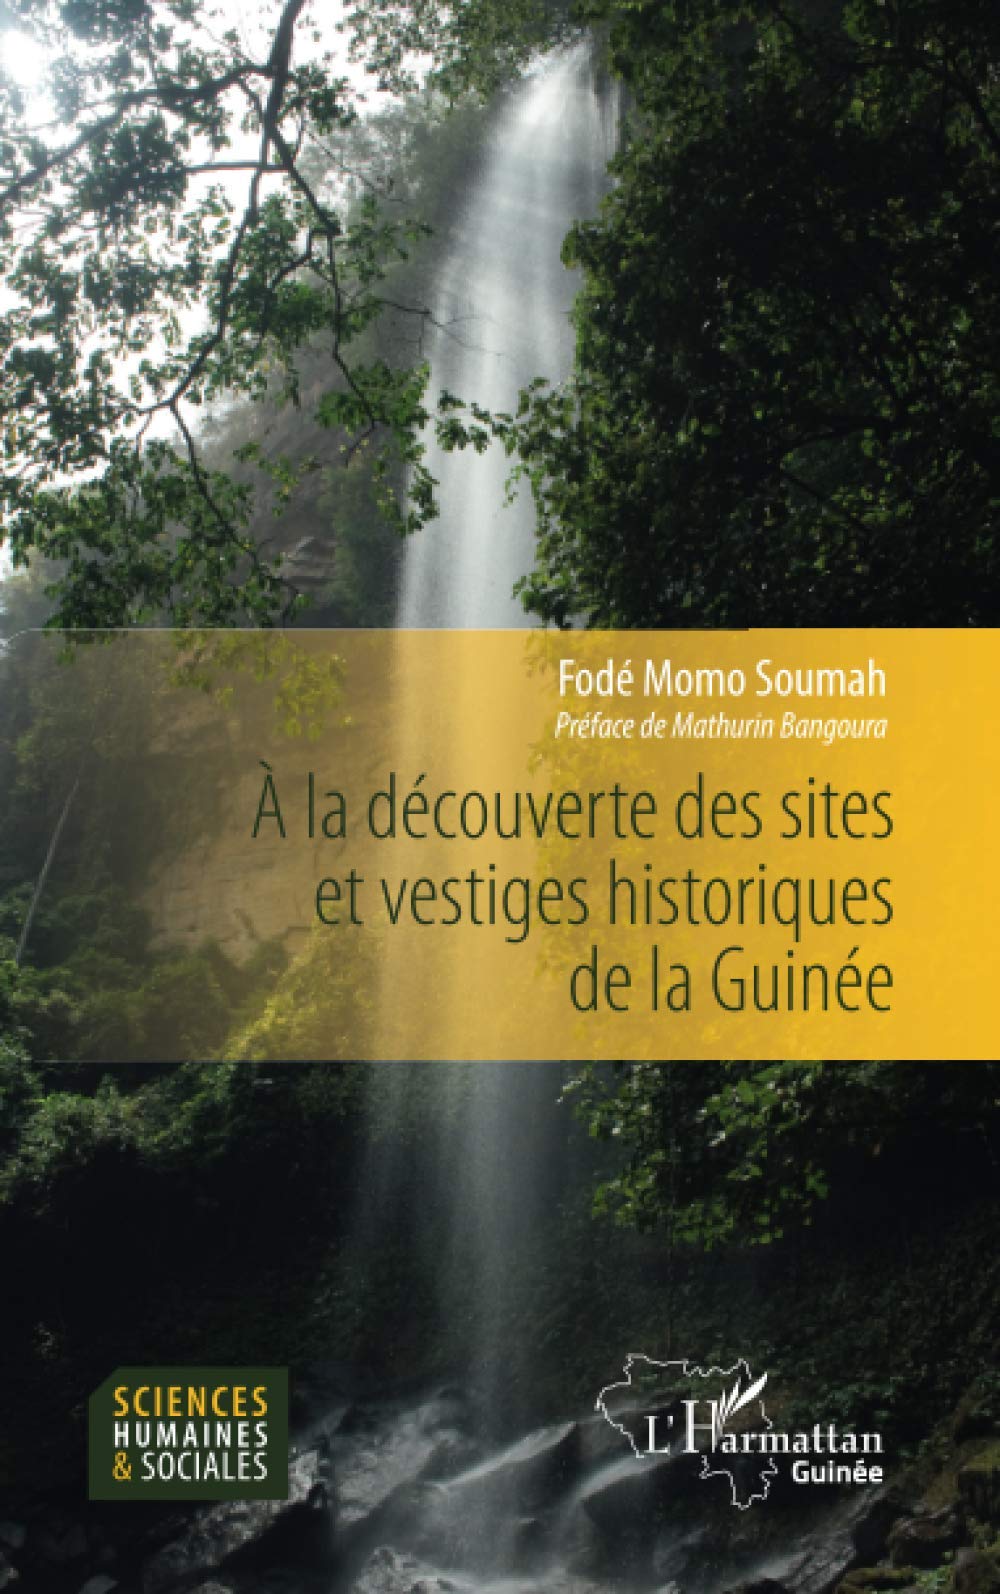 A la découverte des sites et vestiges historiques de la Guinée, 2020, 156 p.